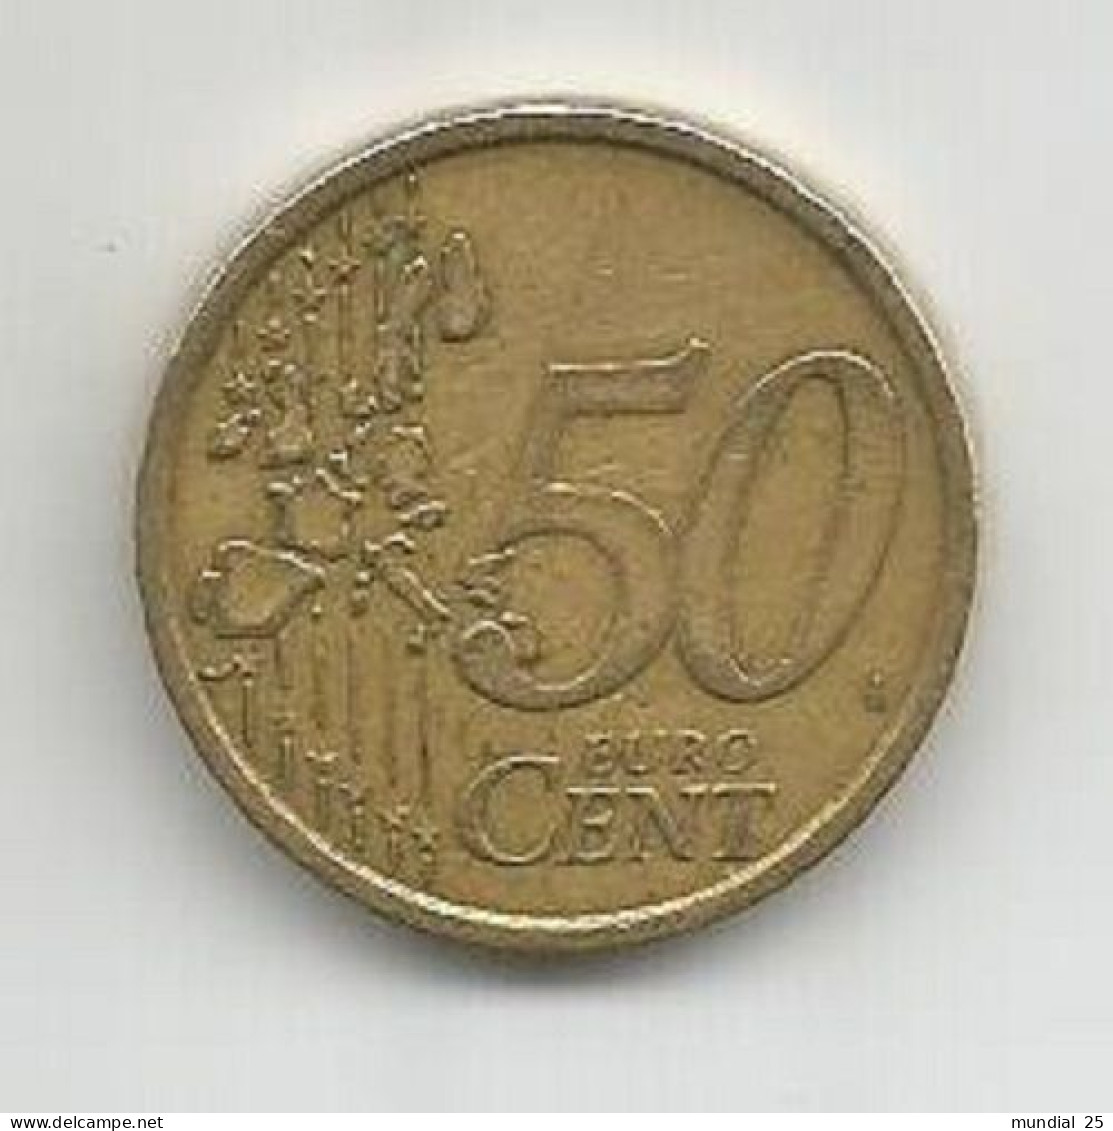 ITALY 50 EURO CENT 2002 (R) - Italy